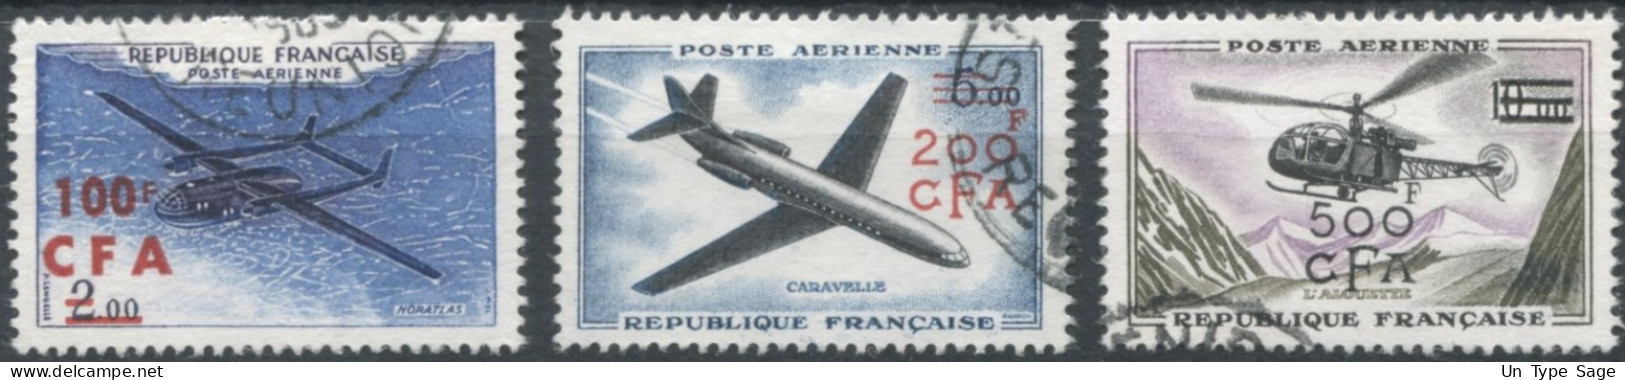 Réunion Poste Aérienne N°58 à 60 - Oblitérés - (F1589) - Aéreo